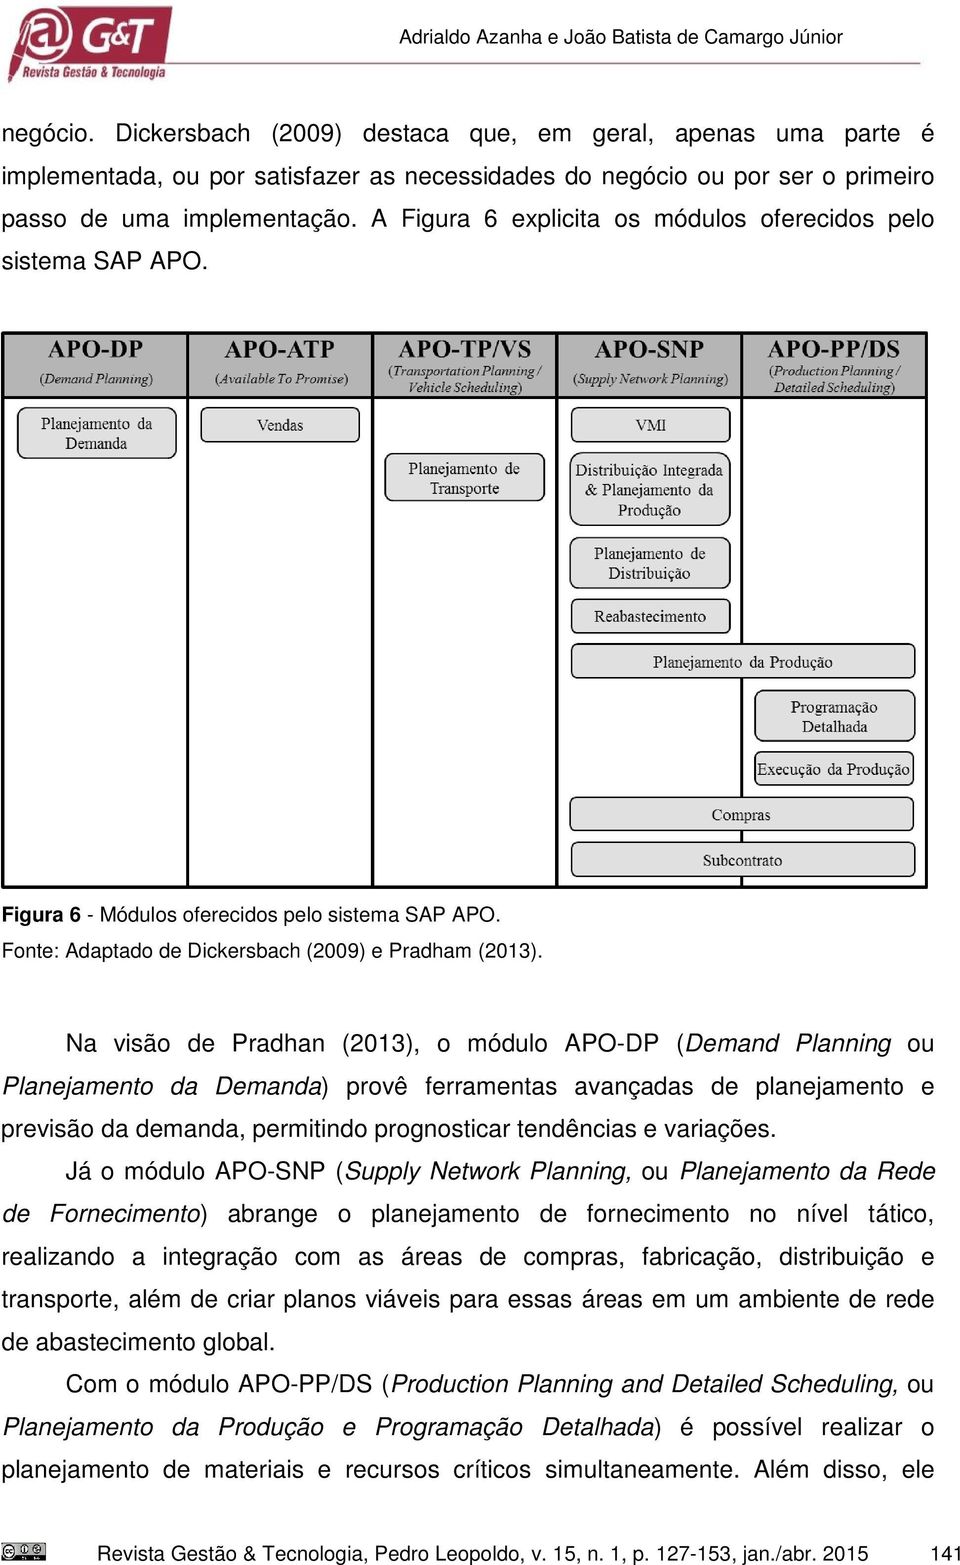 A Figura 6 explicita os módulos oferecidos pelo sistema SAP APO. Figura 6 - Módulos oferecidos pelo sistema SAP APO. Fonte: Adaptado de Dickersbach (2009) e Pradham (2013).